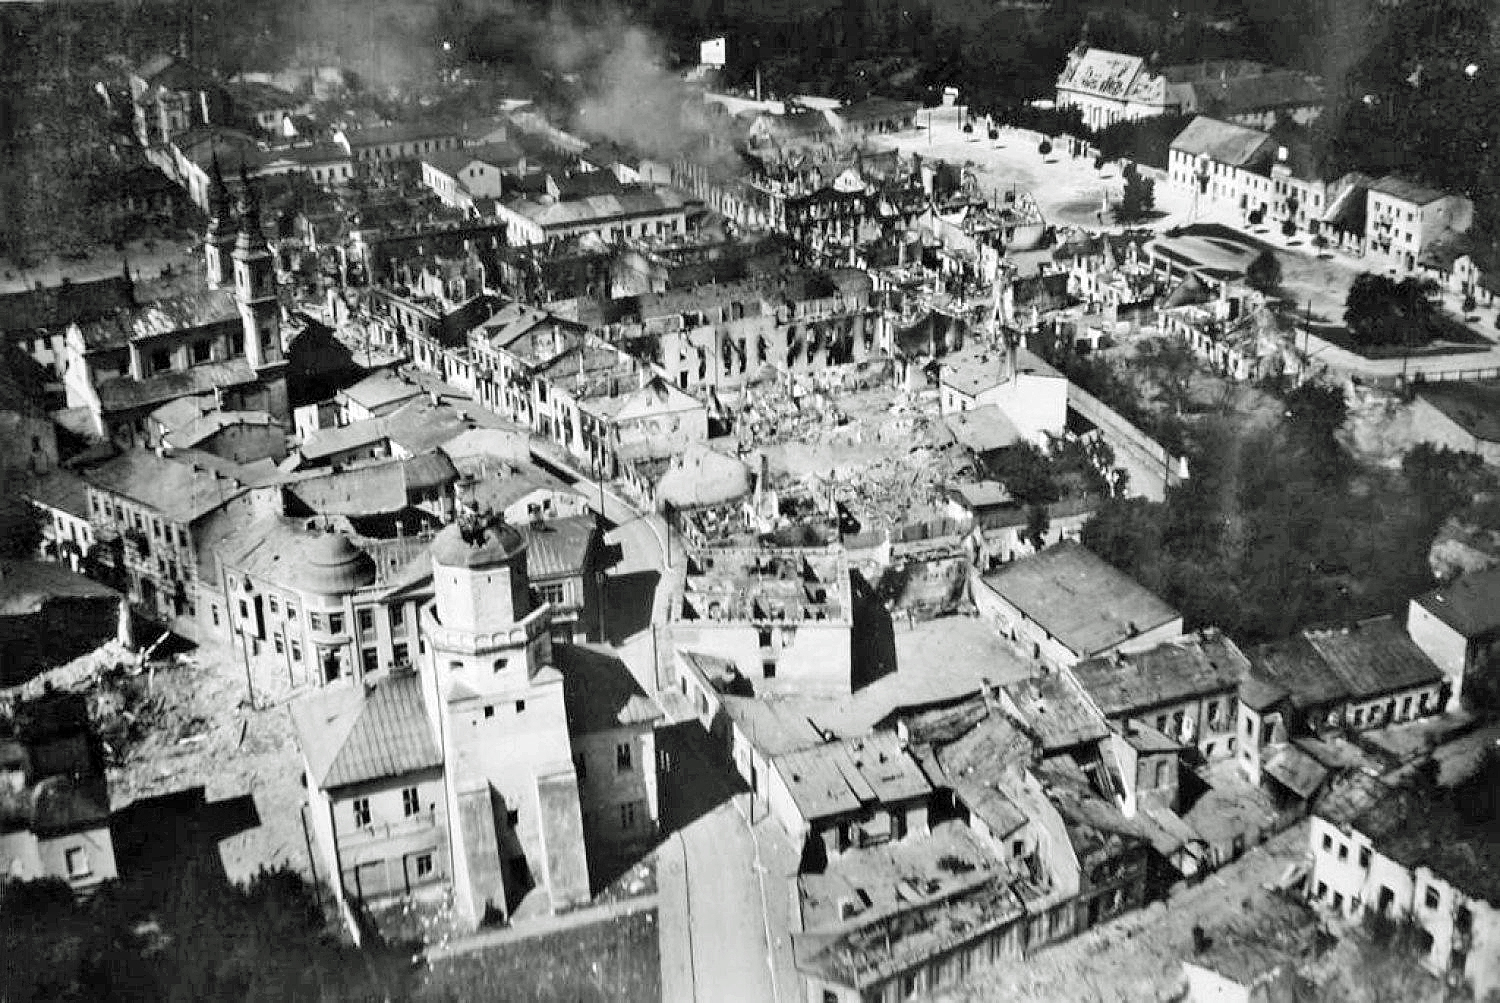 Zniszczenia centrum miasta z 1 września 1939, zdjęcie ze zbiorów Muzeum Ziemi Wieluńskiej, fot. wikimedia (domena publiczna)